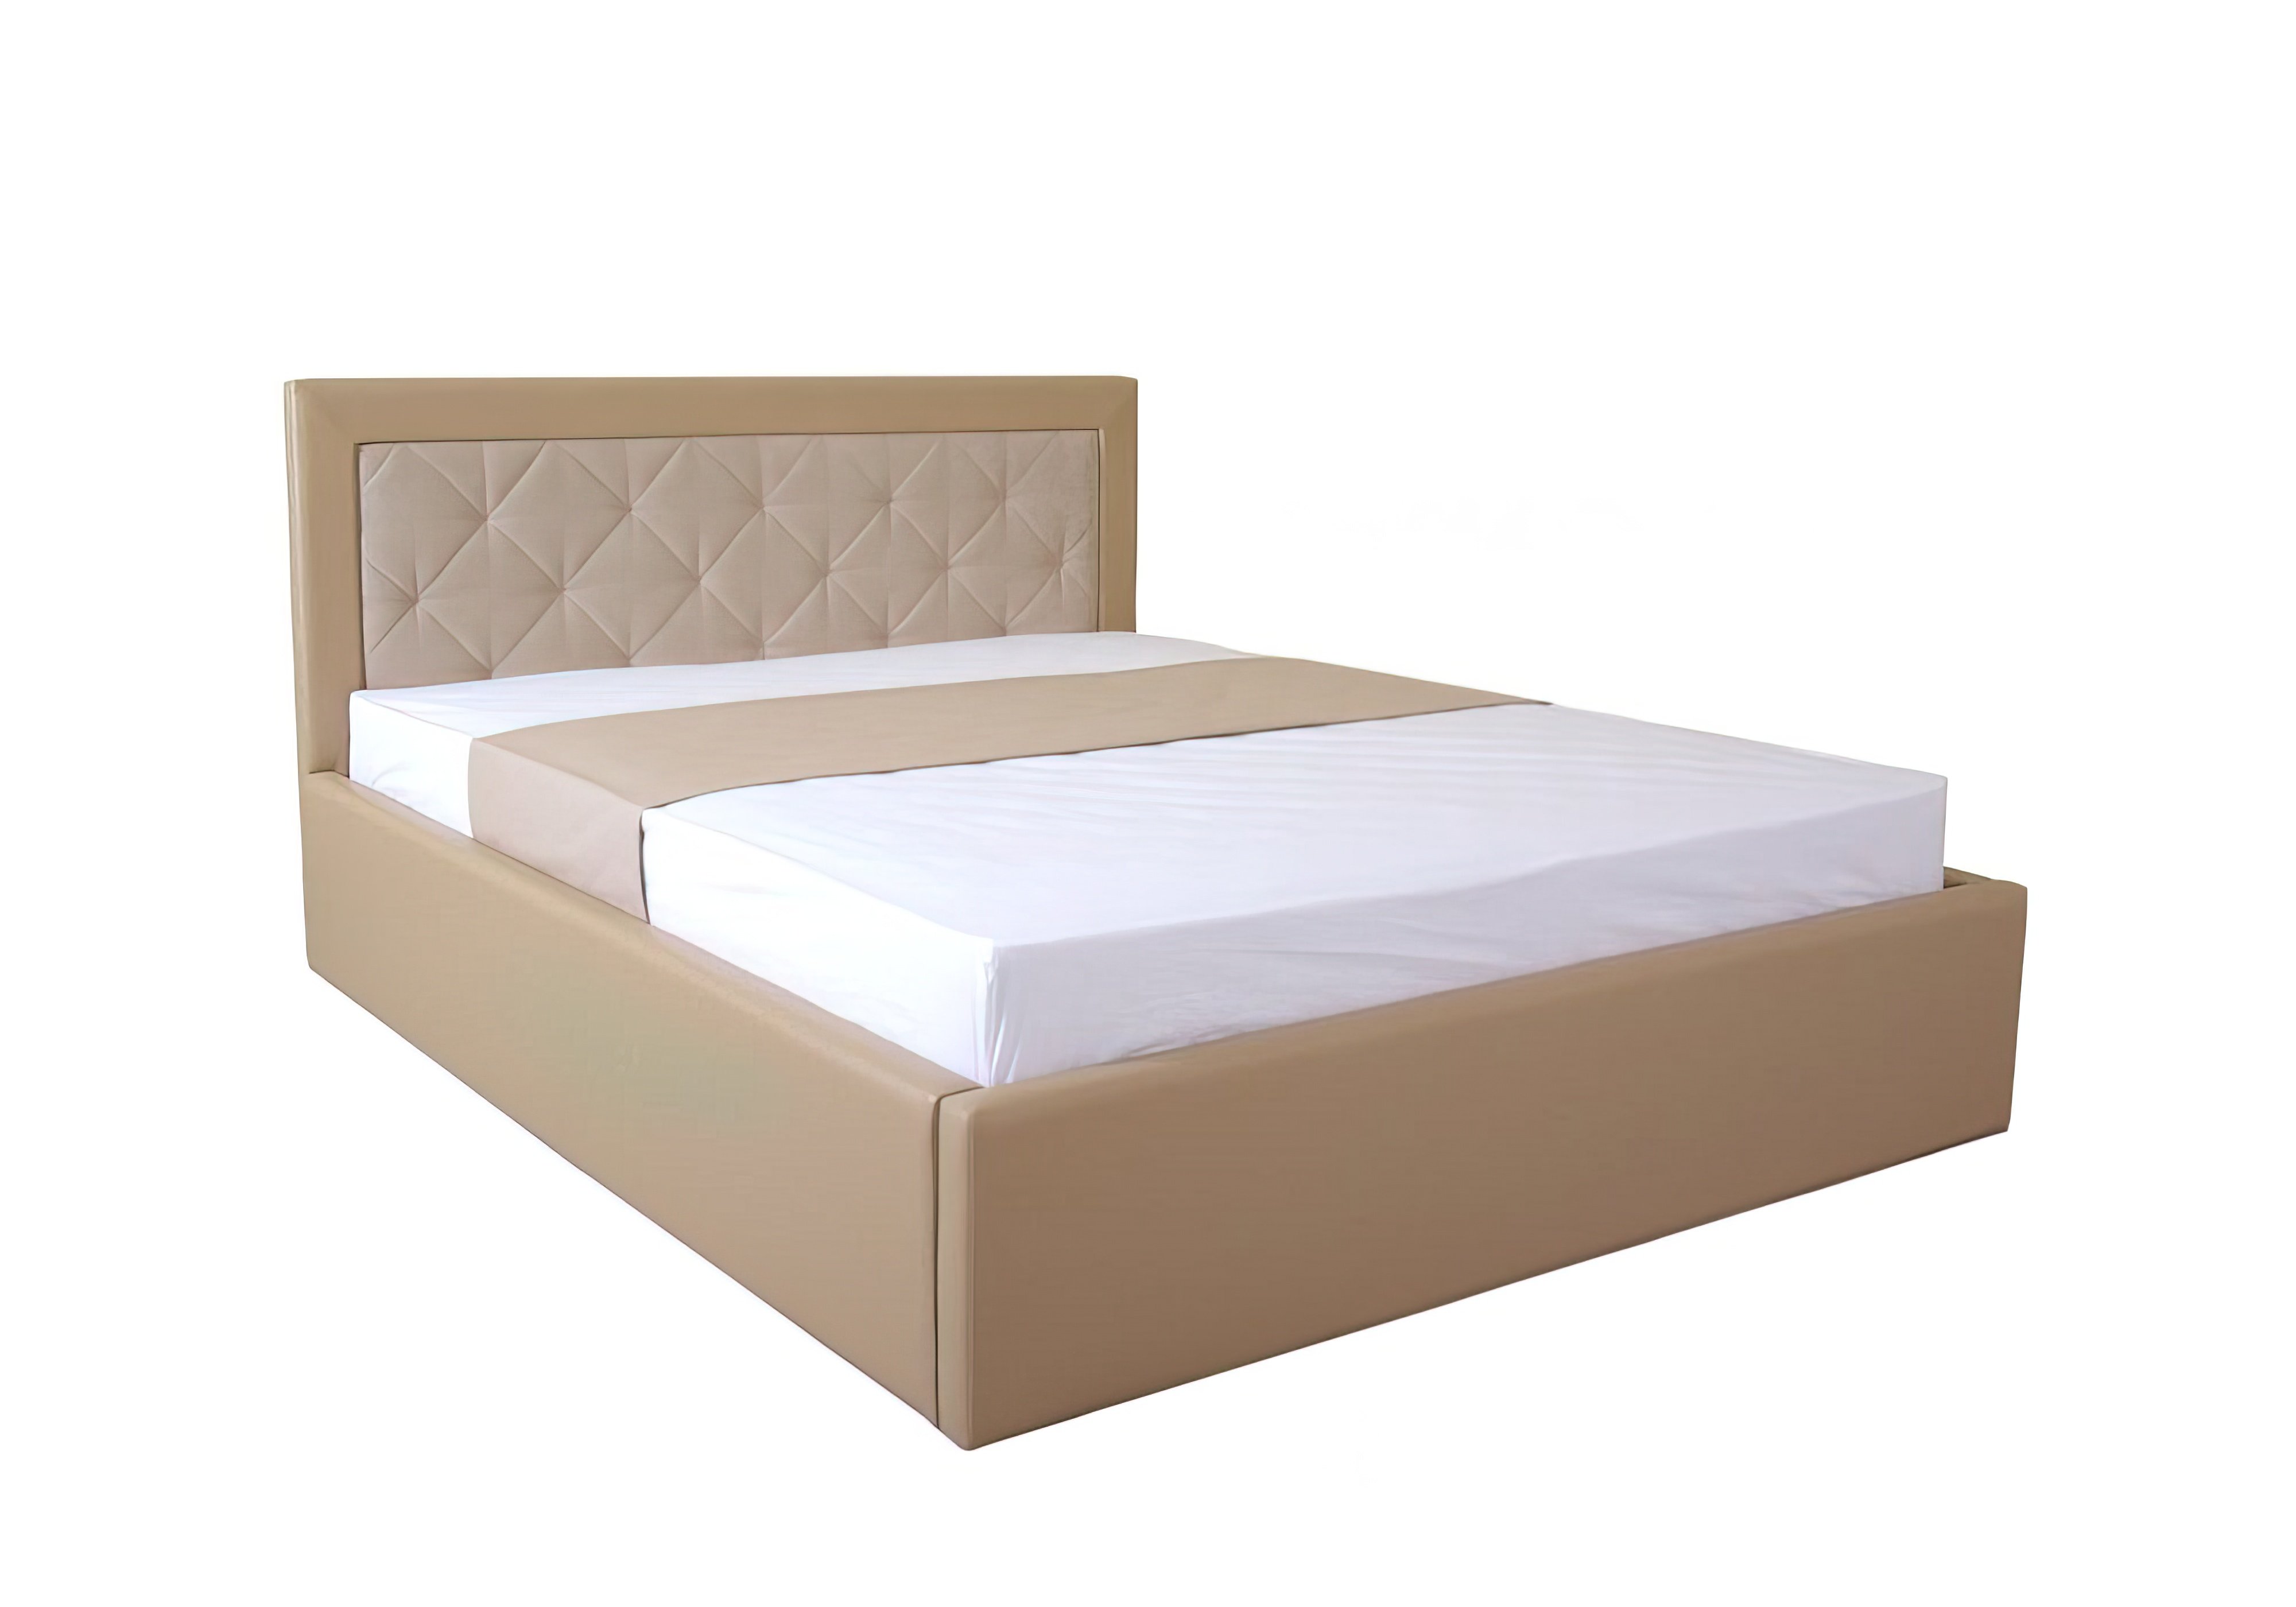  Купить Кровати с подъемным механизмом Кровать двуспальная "IRMA lift" EAGLE